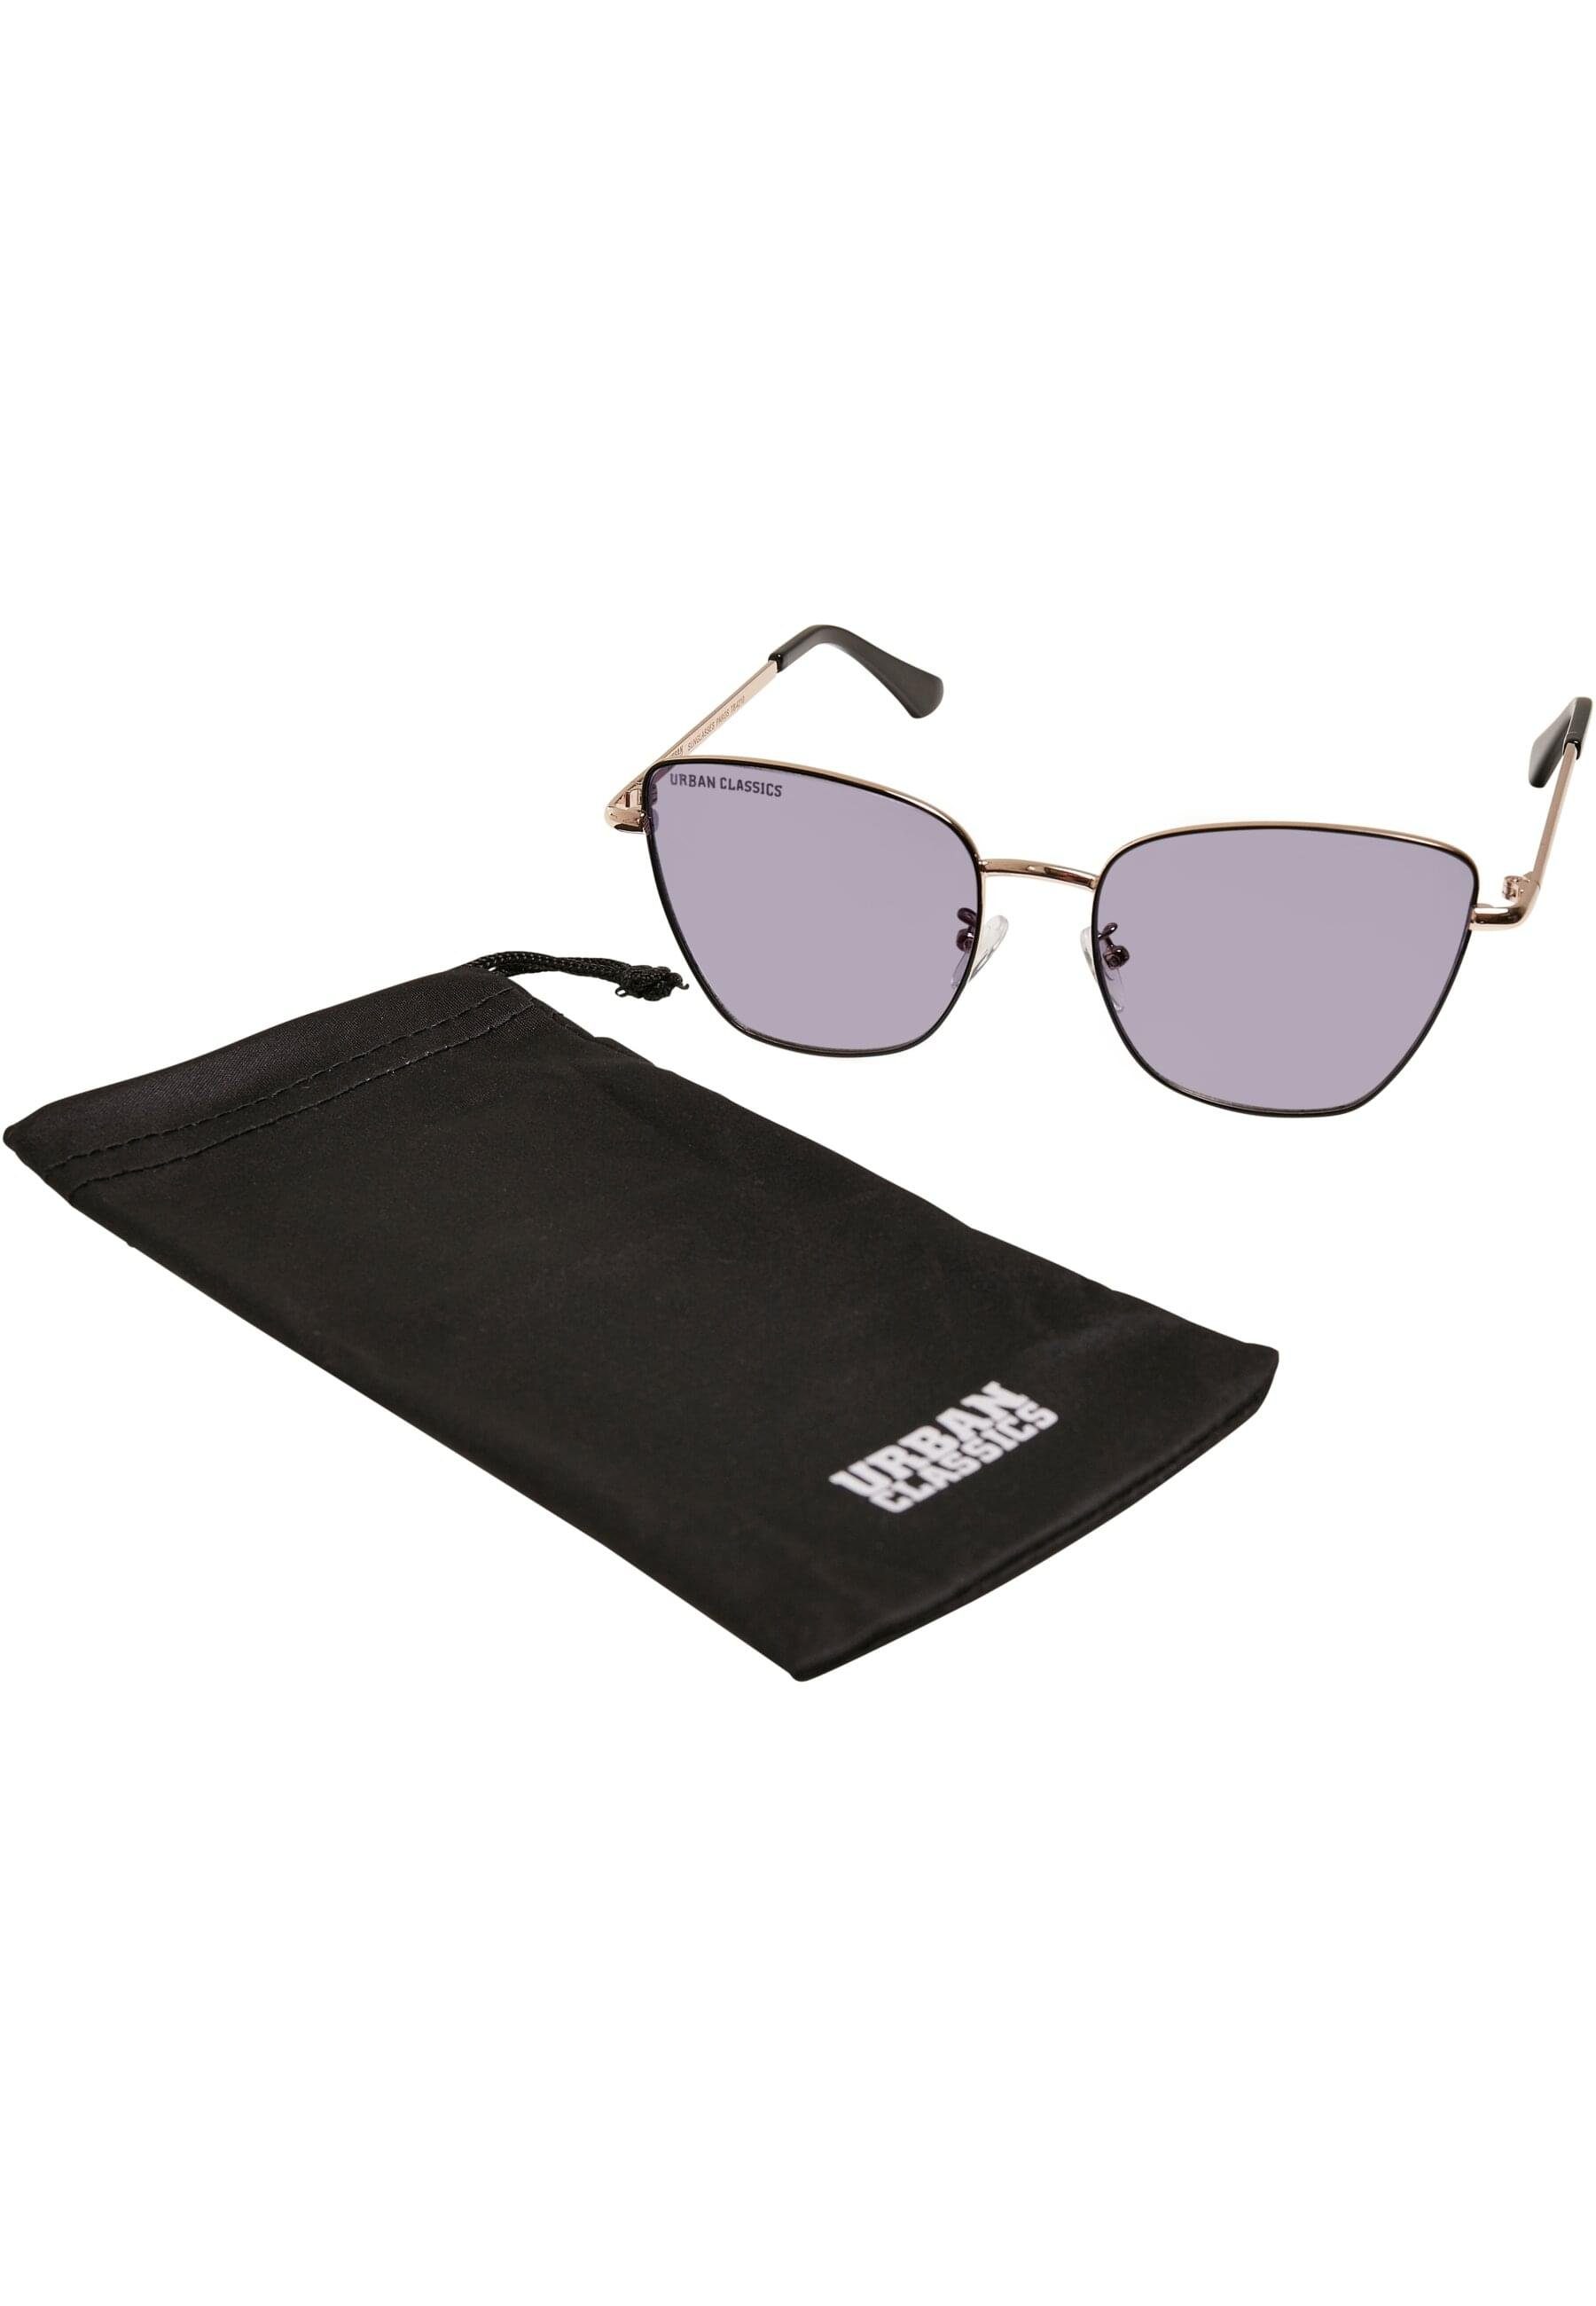 Sunglasses Unisex Paros URBAN Sonnenbrille CLASSICS